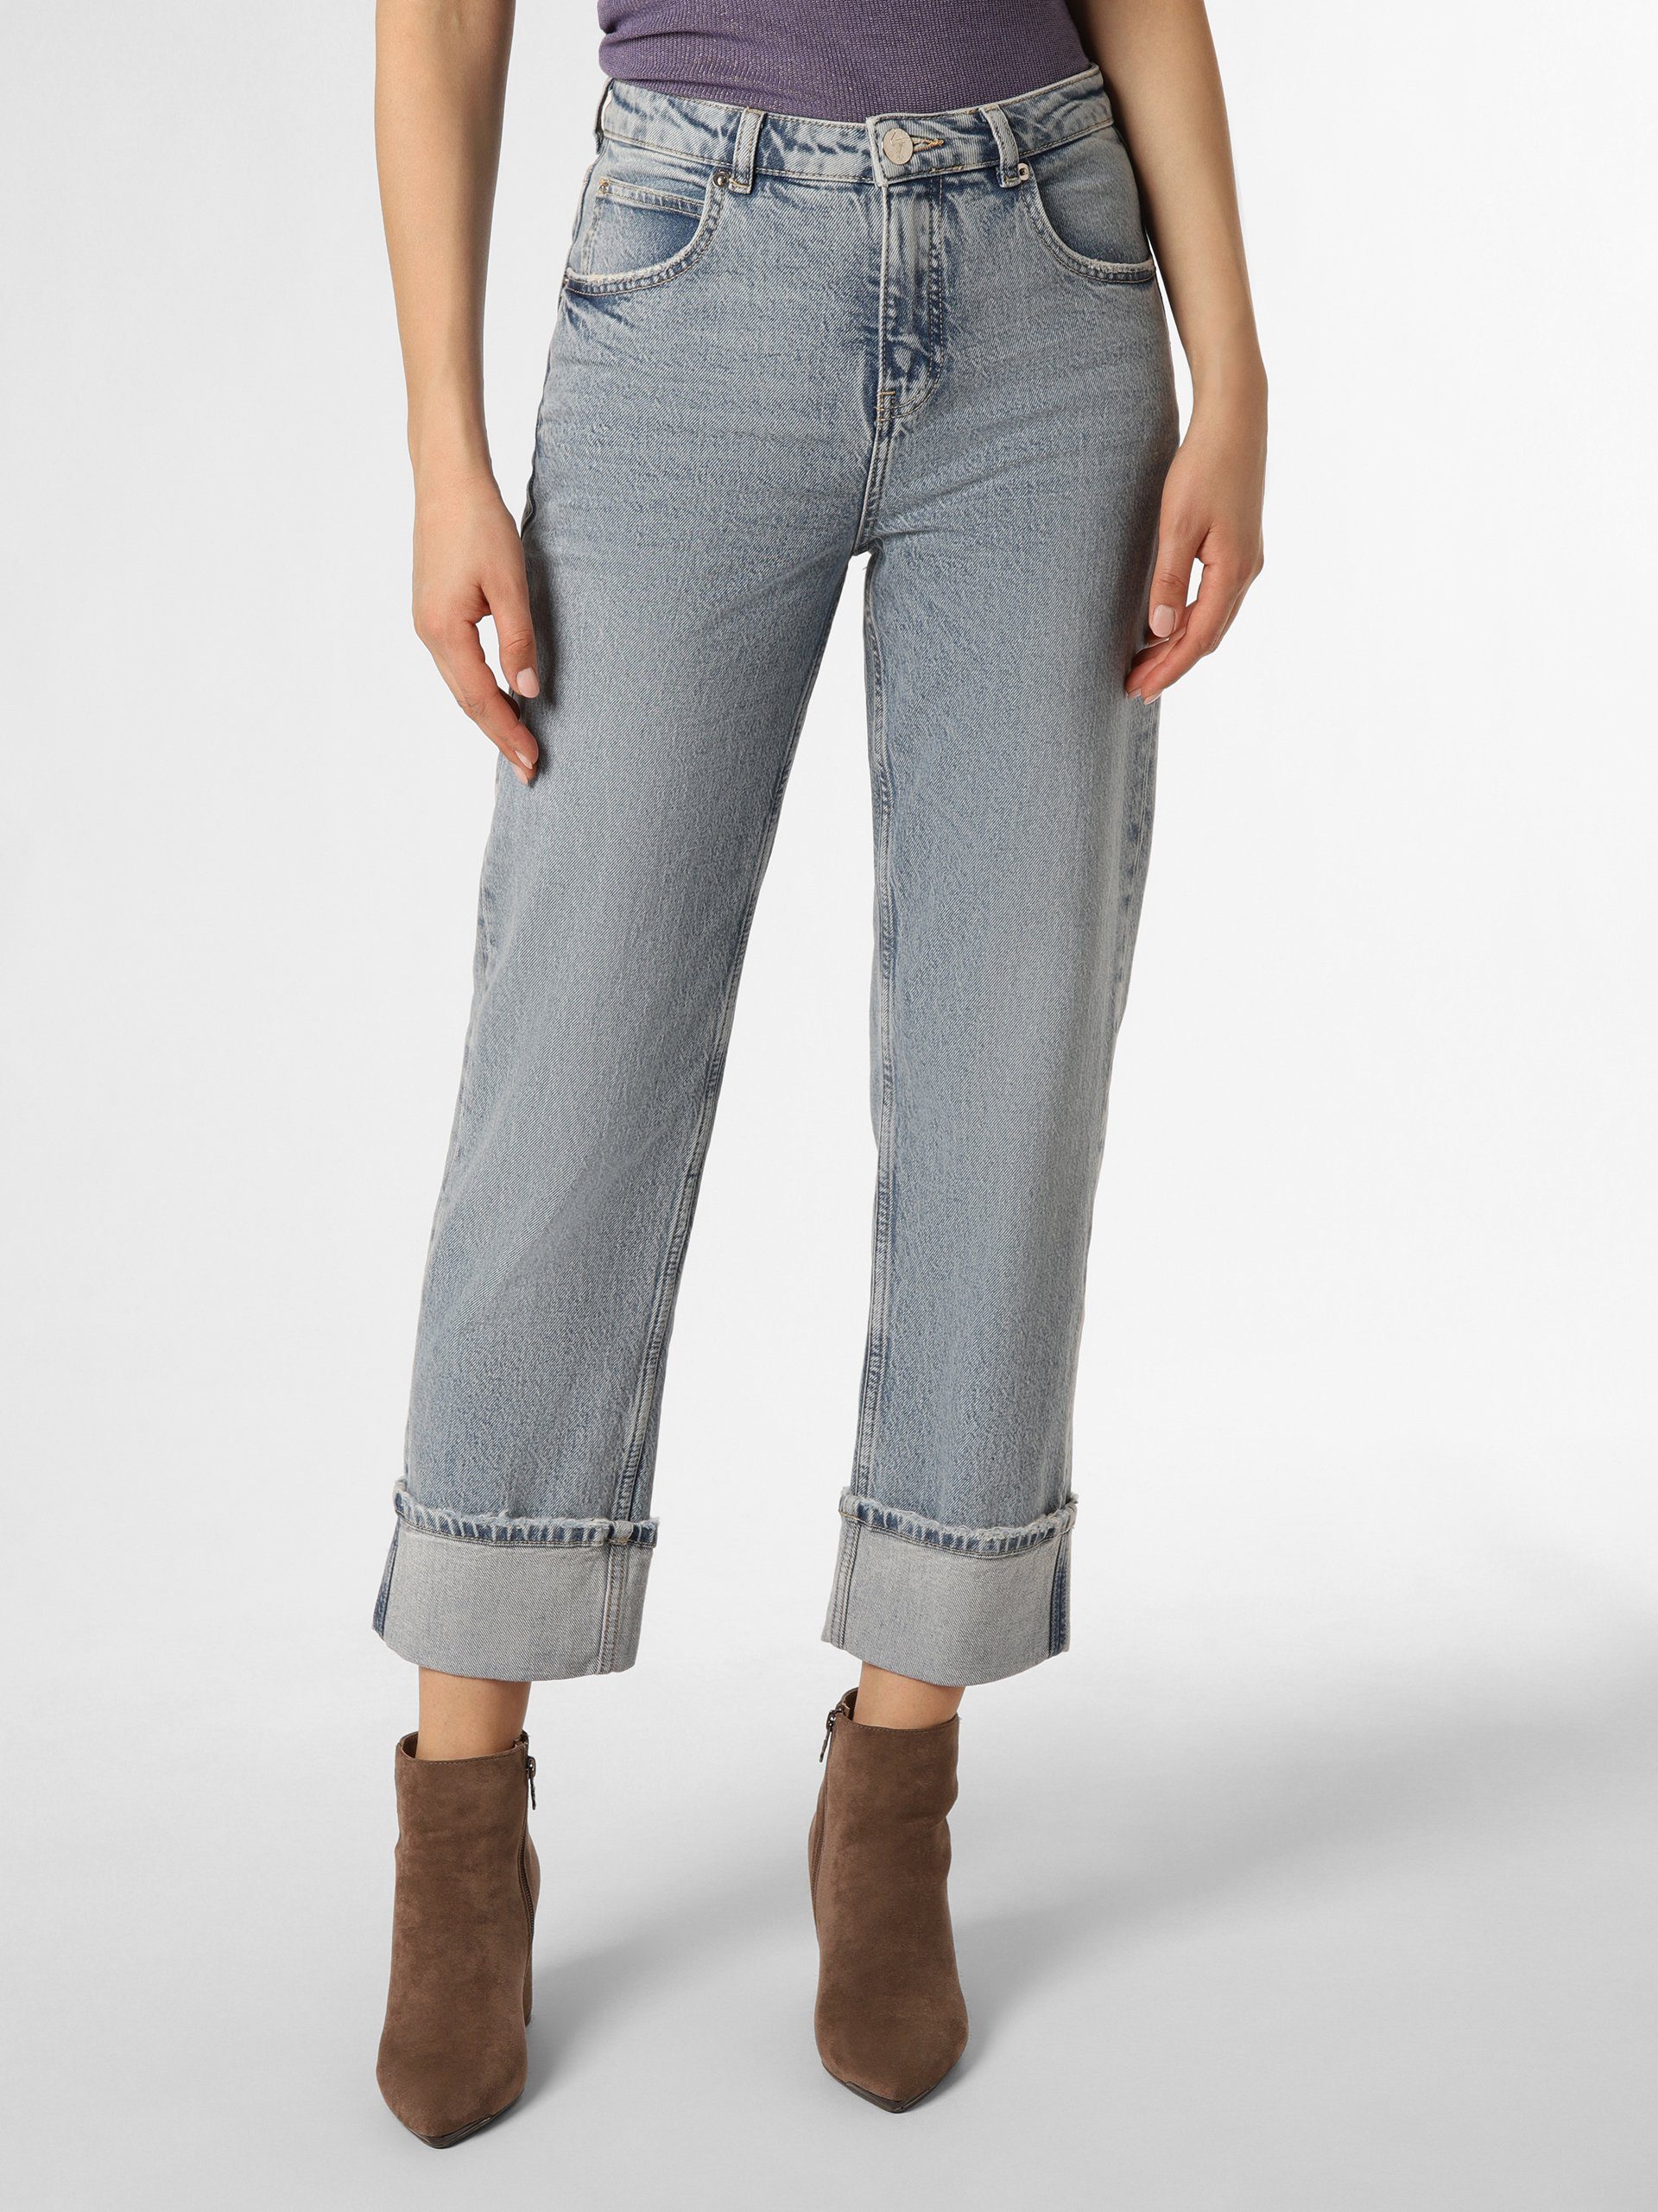 OTTO für Damen | online kaufen Jeans OPUS Culottes